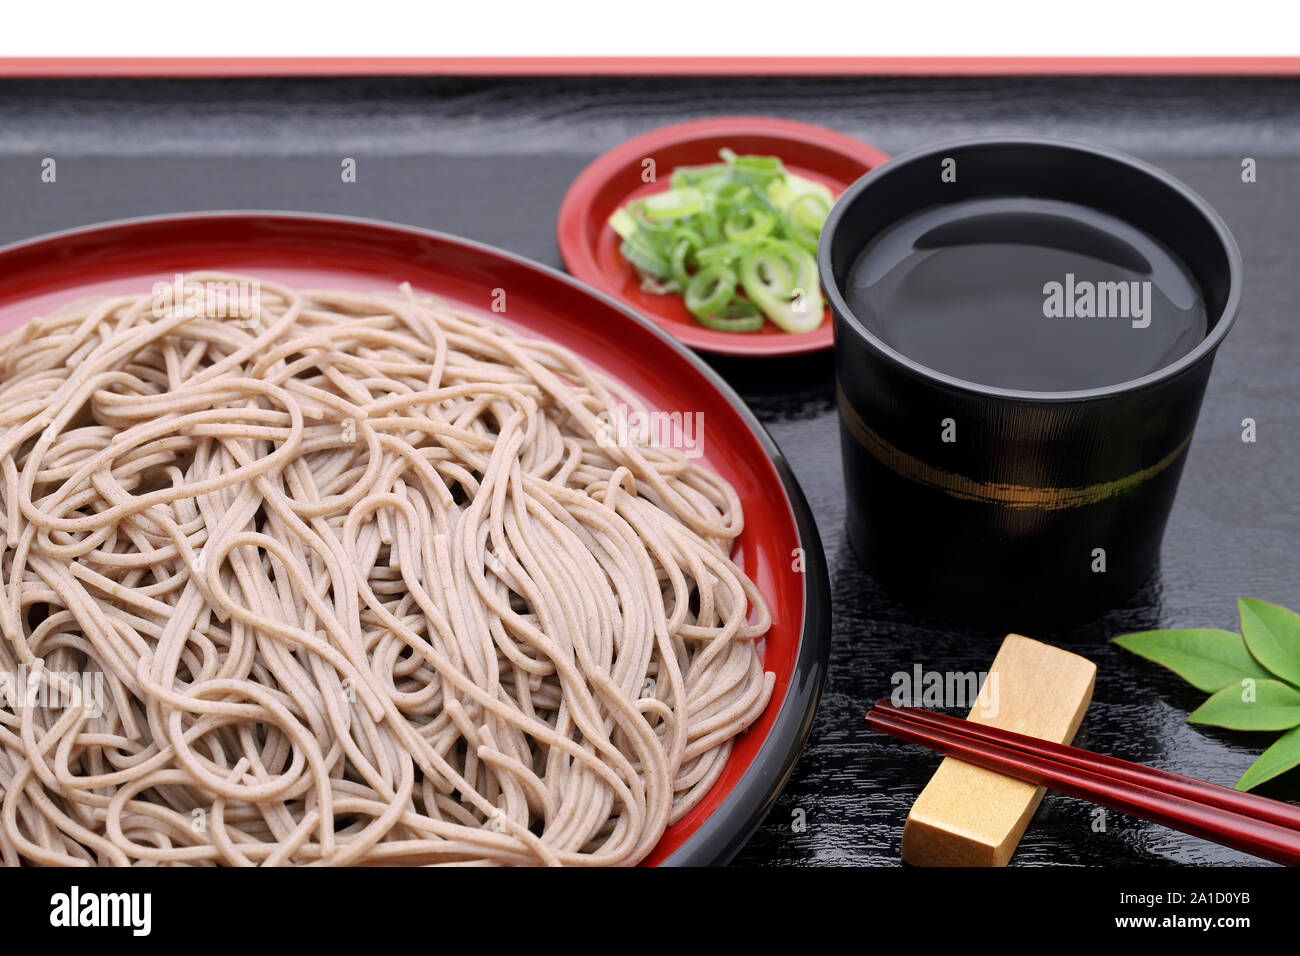 Japanese Zaru soba noodles on wooden plate Stock Photo